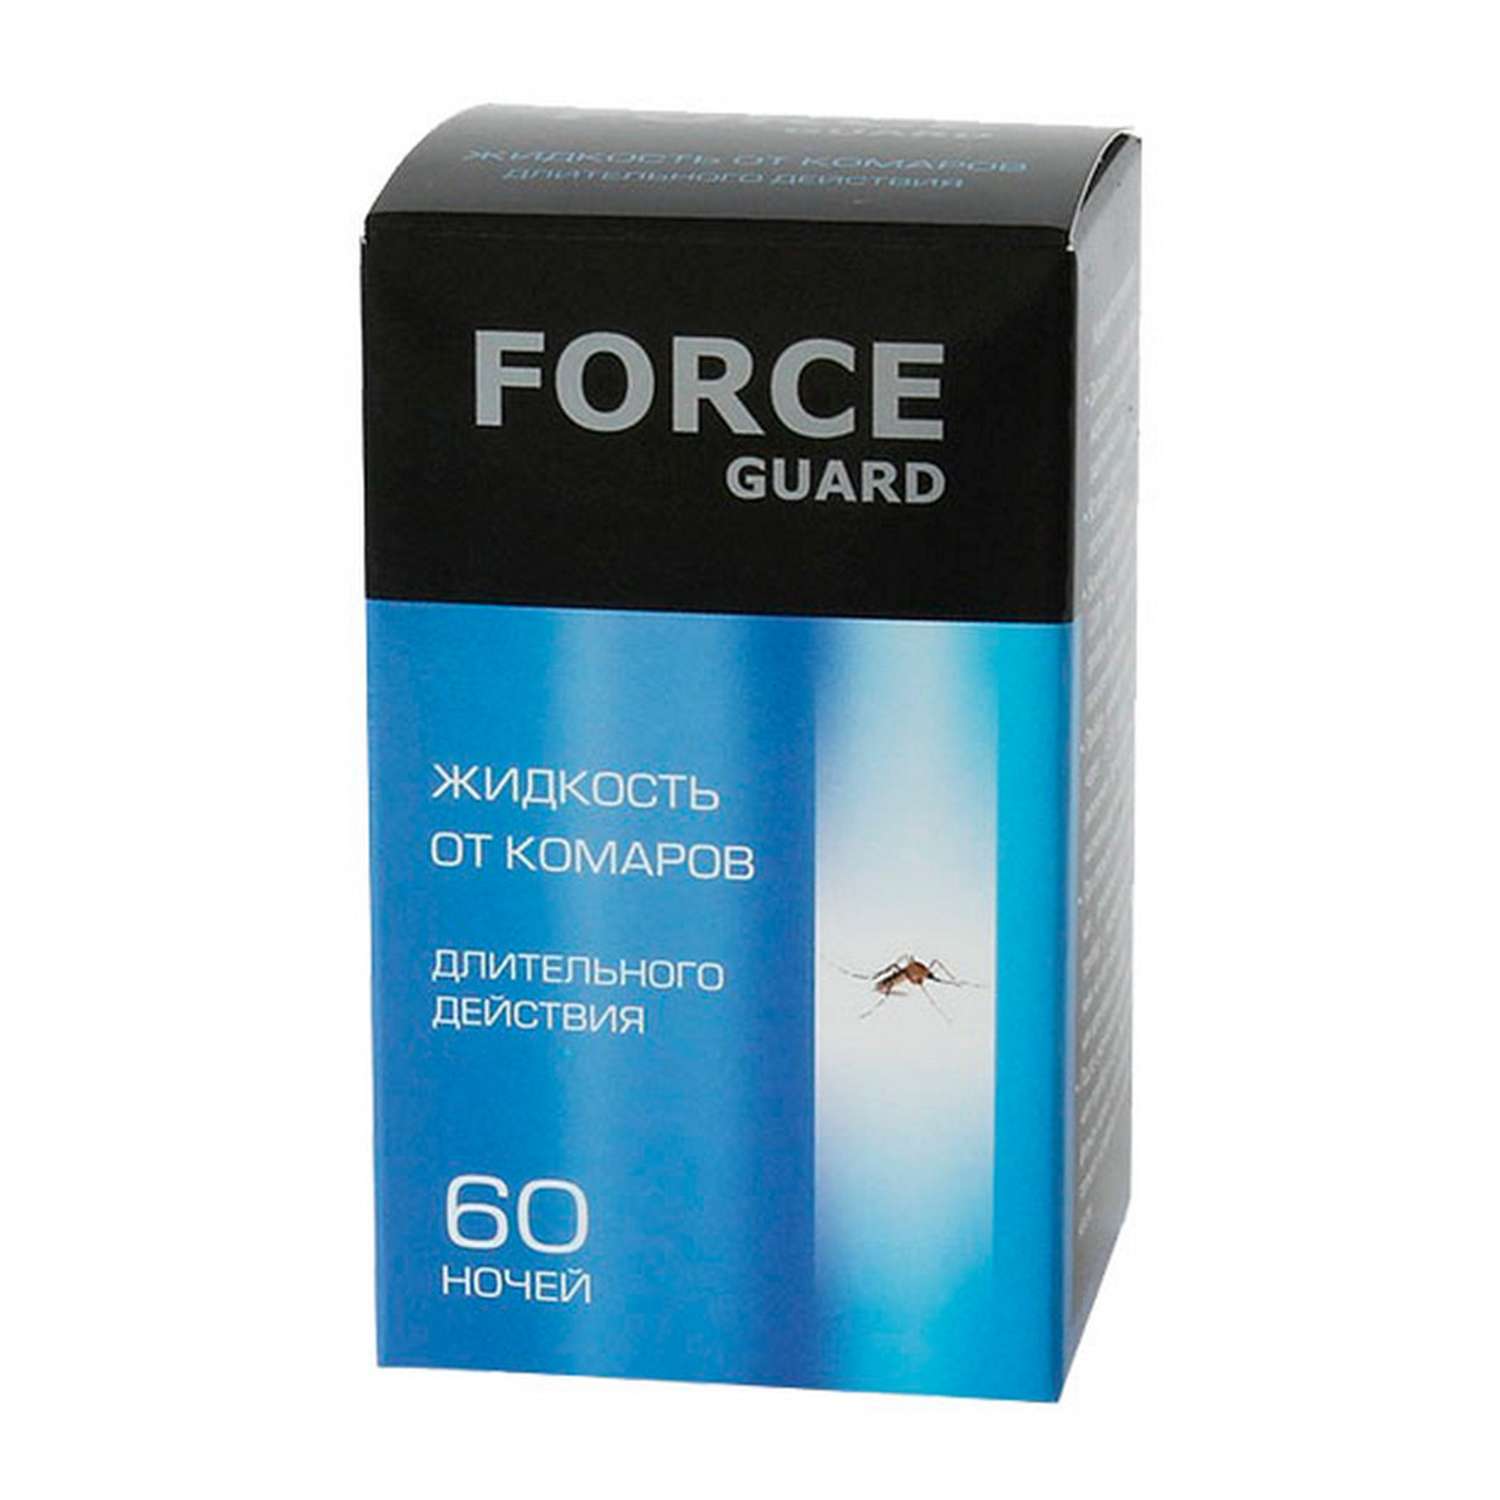 Жидкость от комаров Force Guard длительного действия синяя 60 ночей - фото 1